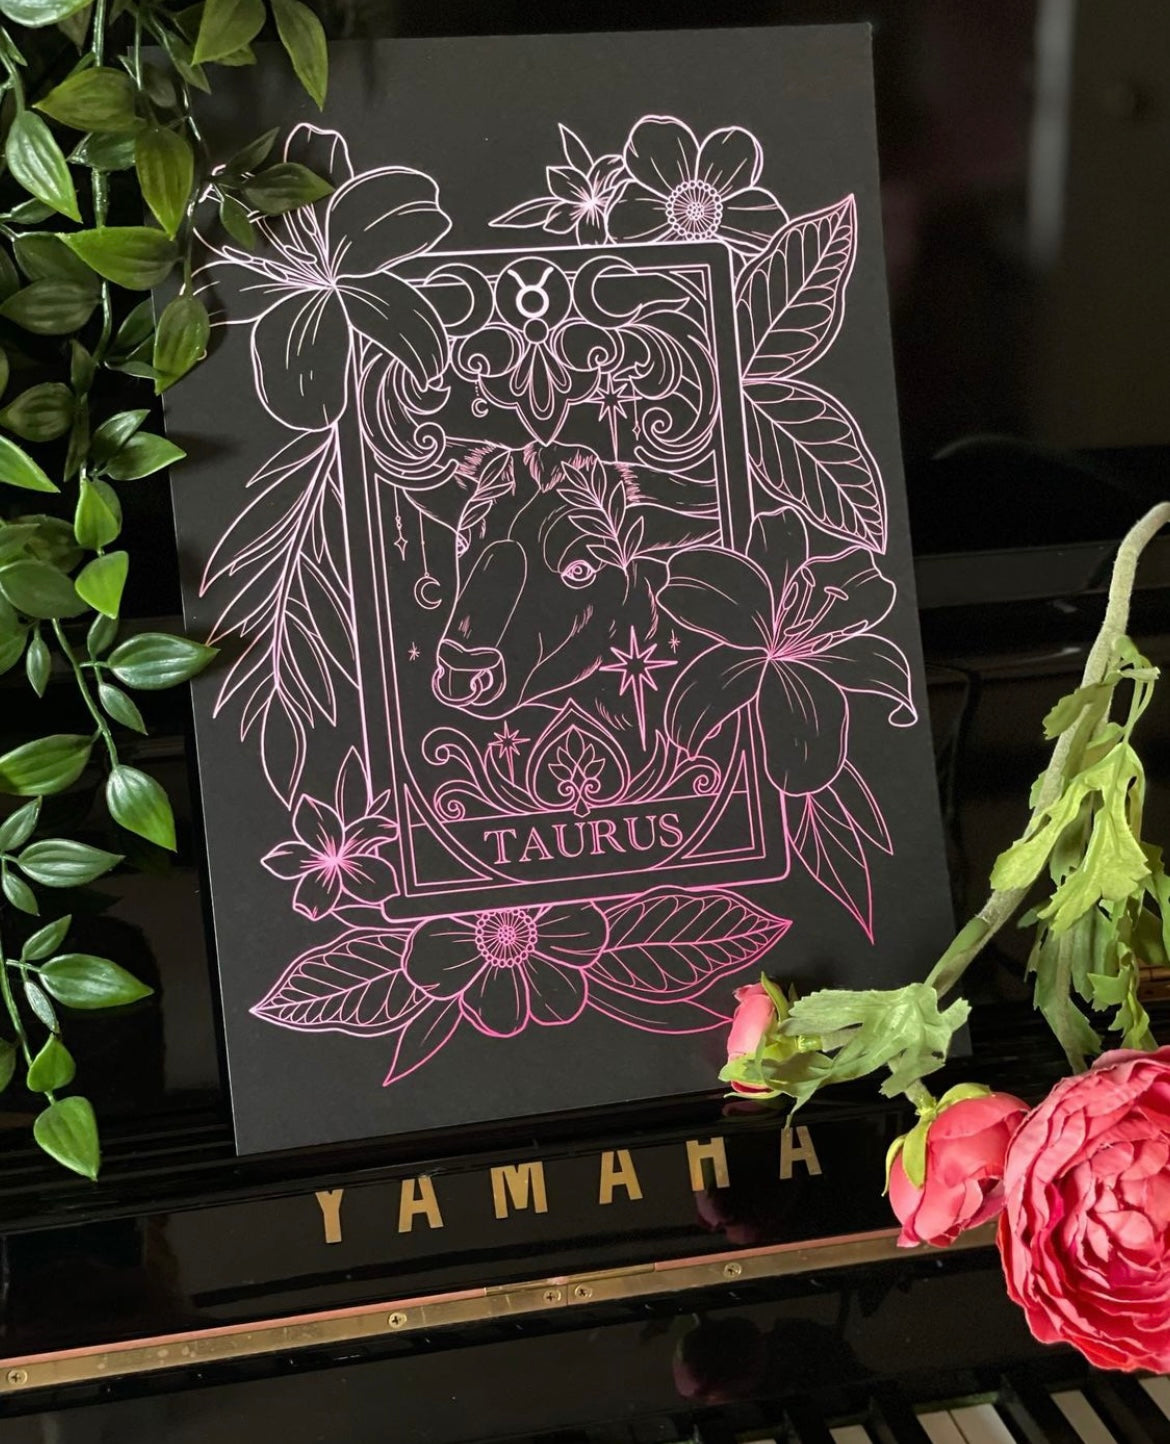 Zodiac Taurus Tarot Card Print Tattoo Style Star Sign Illustration